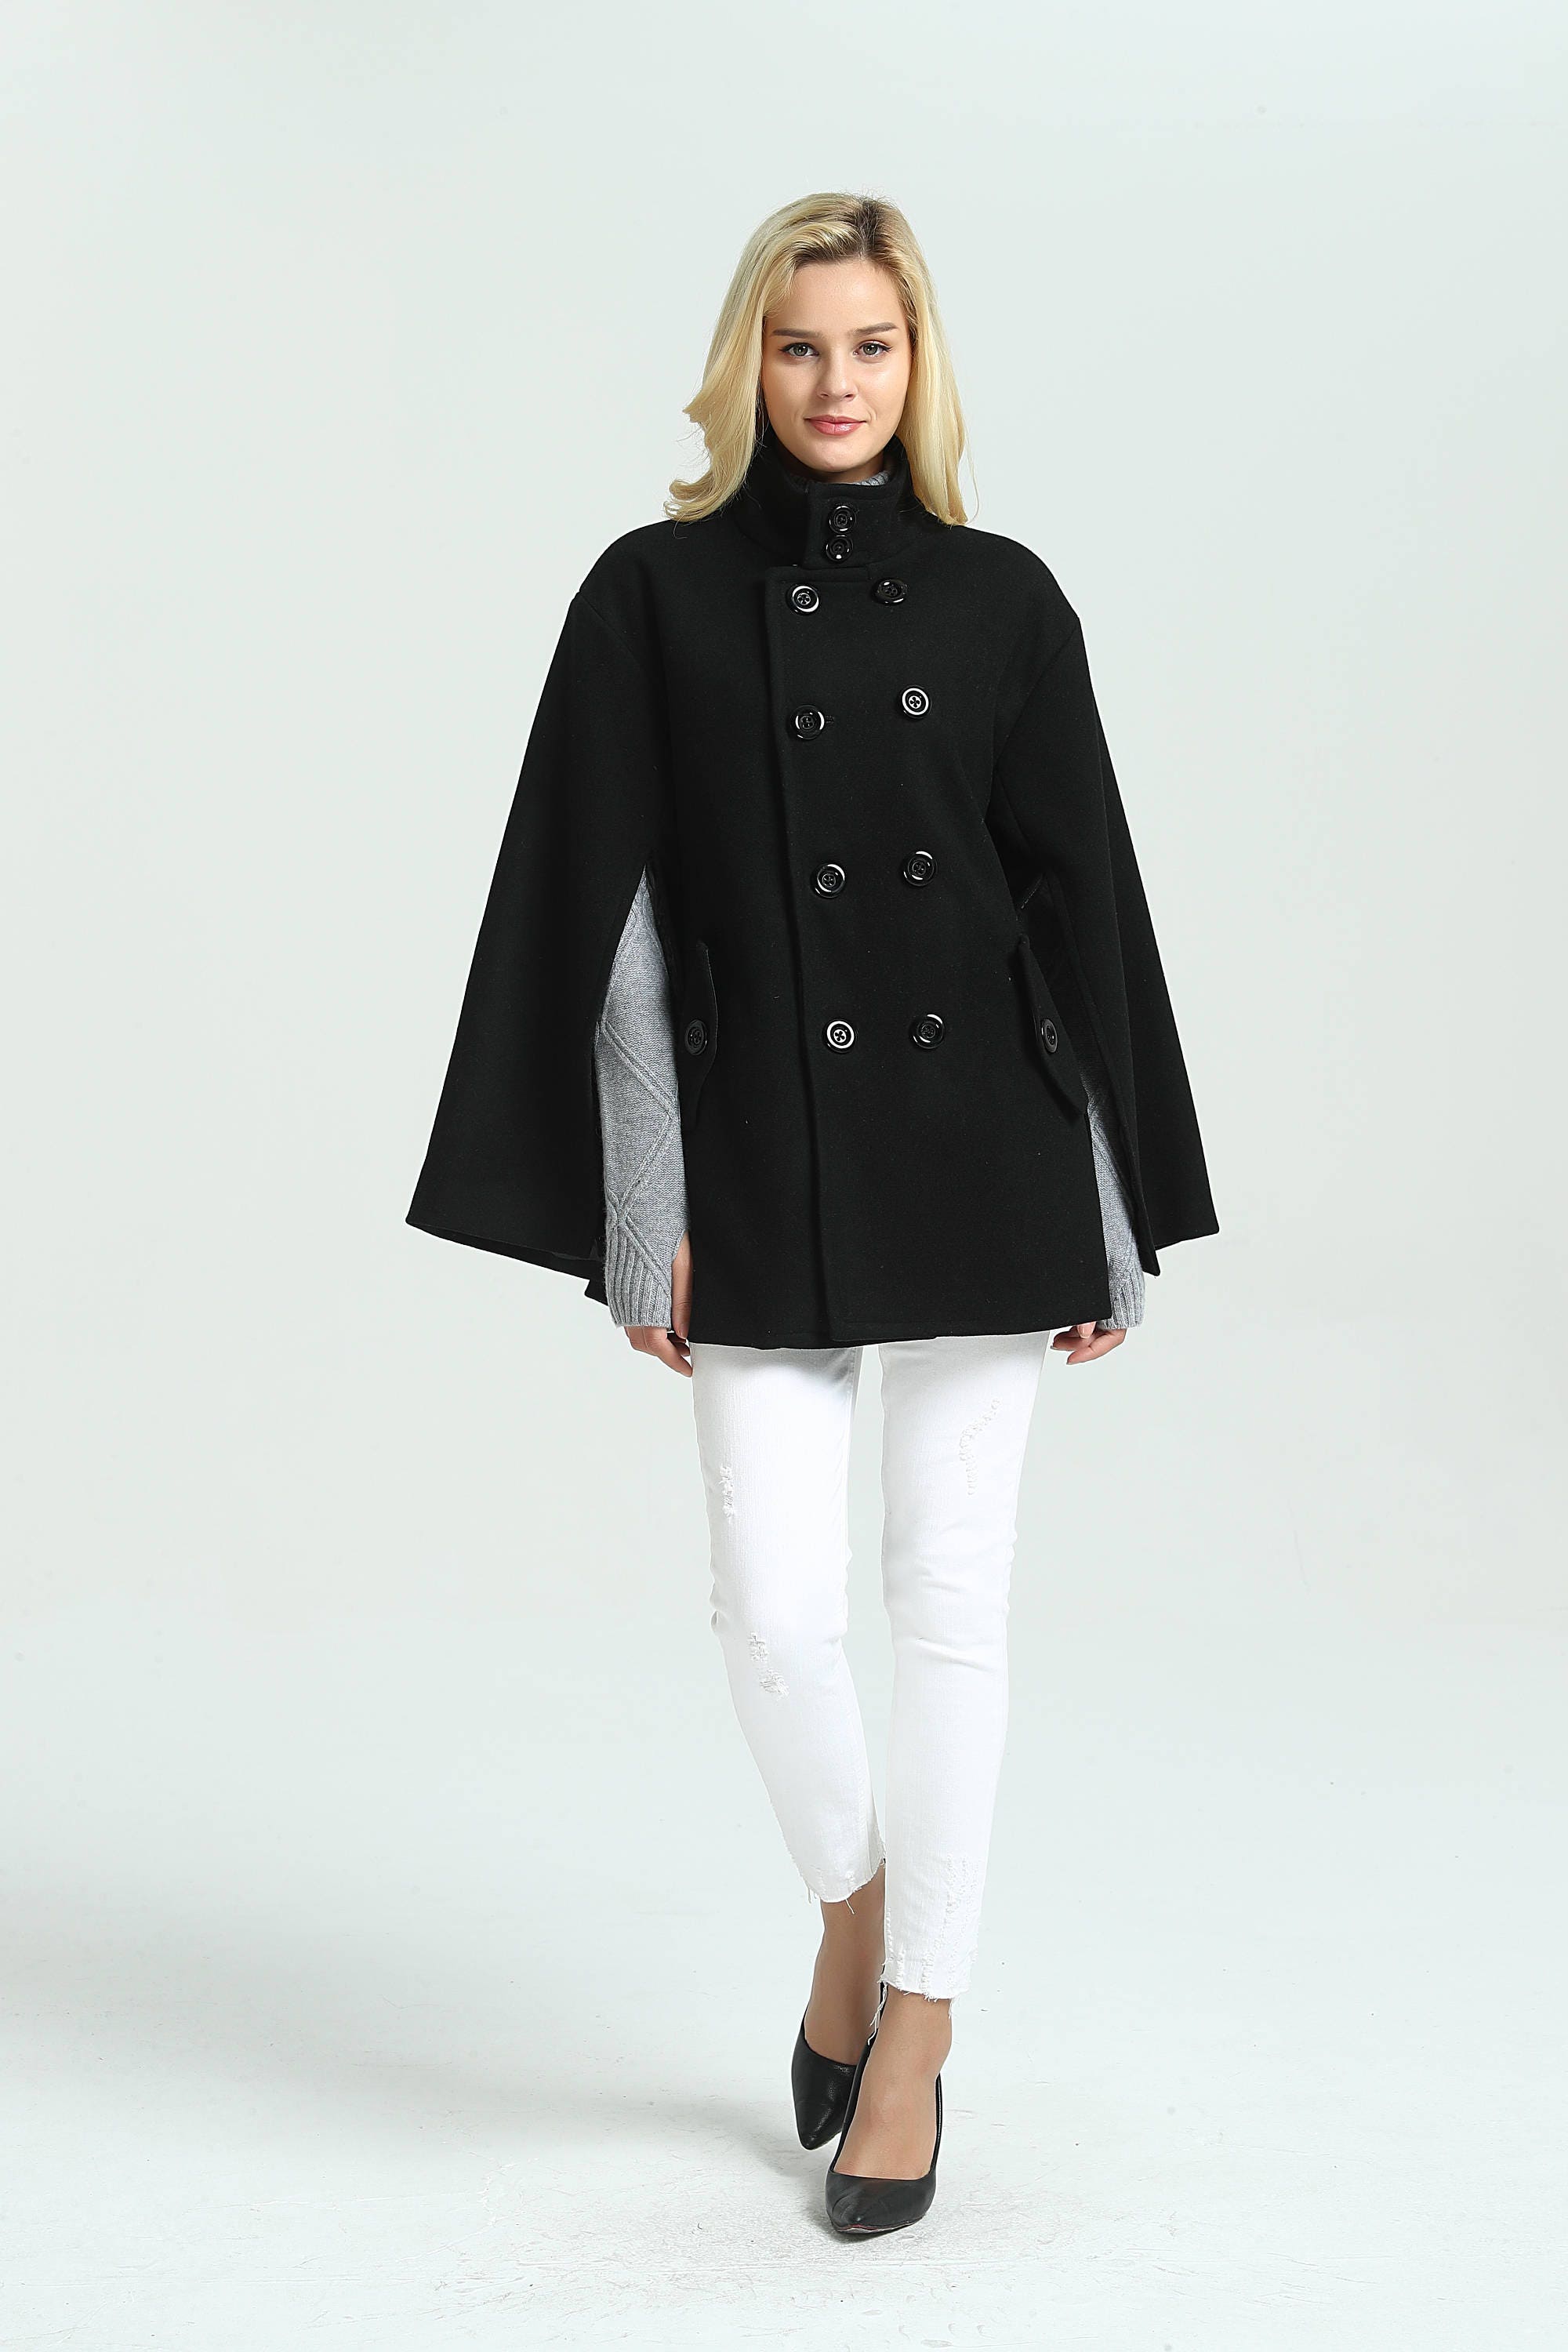 Women's Cloak Coat Outwear Loose Wool Jacket Short Warm | Etsy